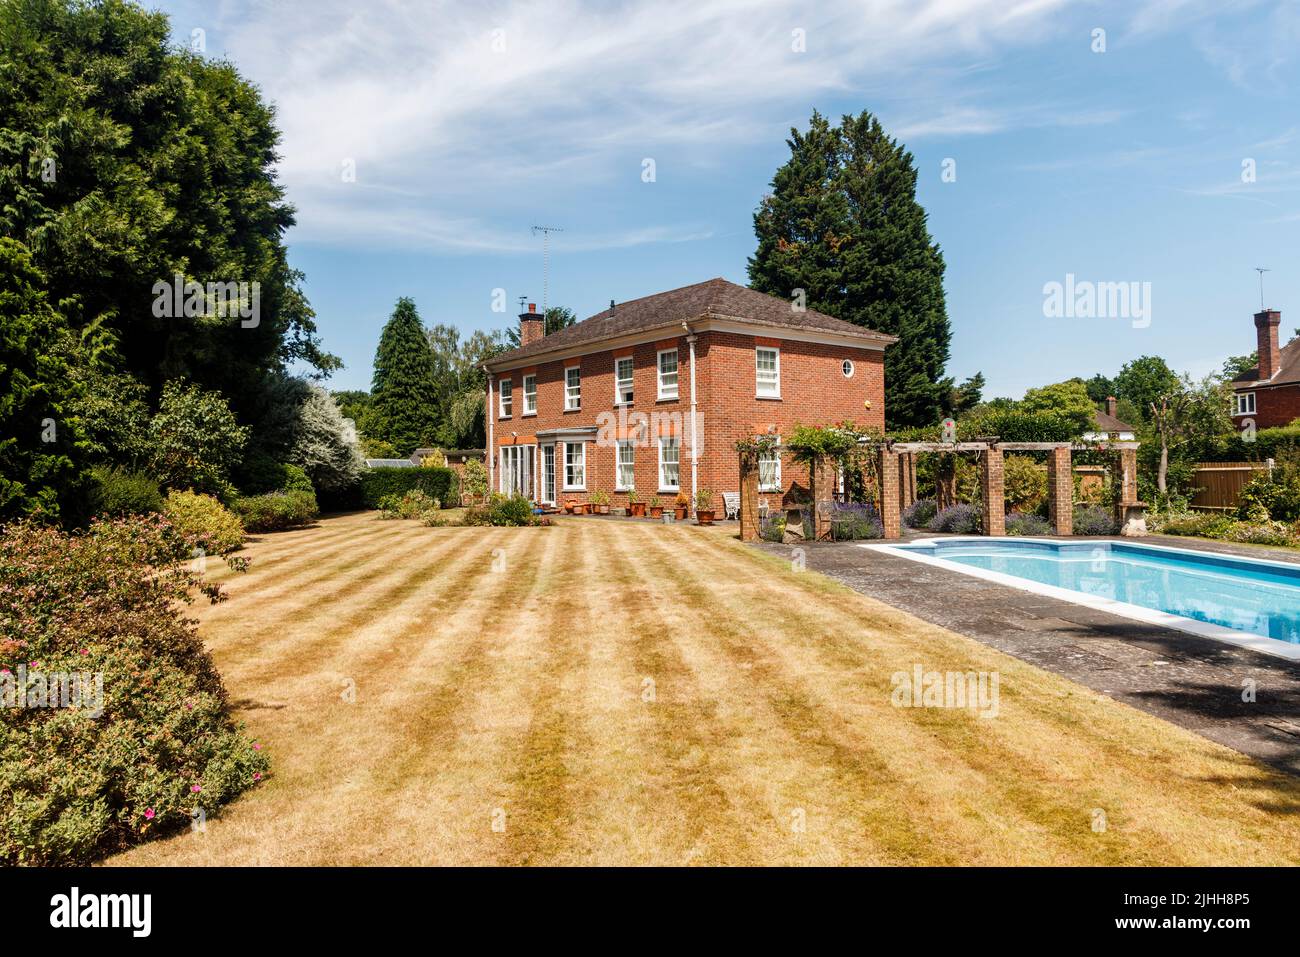 Außenansicht eines Einfamilienhauses, Garten und Schwimmbad, der Rasen mit Streifen, aber braun von Trockenheit und heißen Temperaturen im Sommer, Surrey, Großbritannien Stockfoto